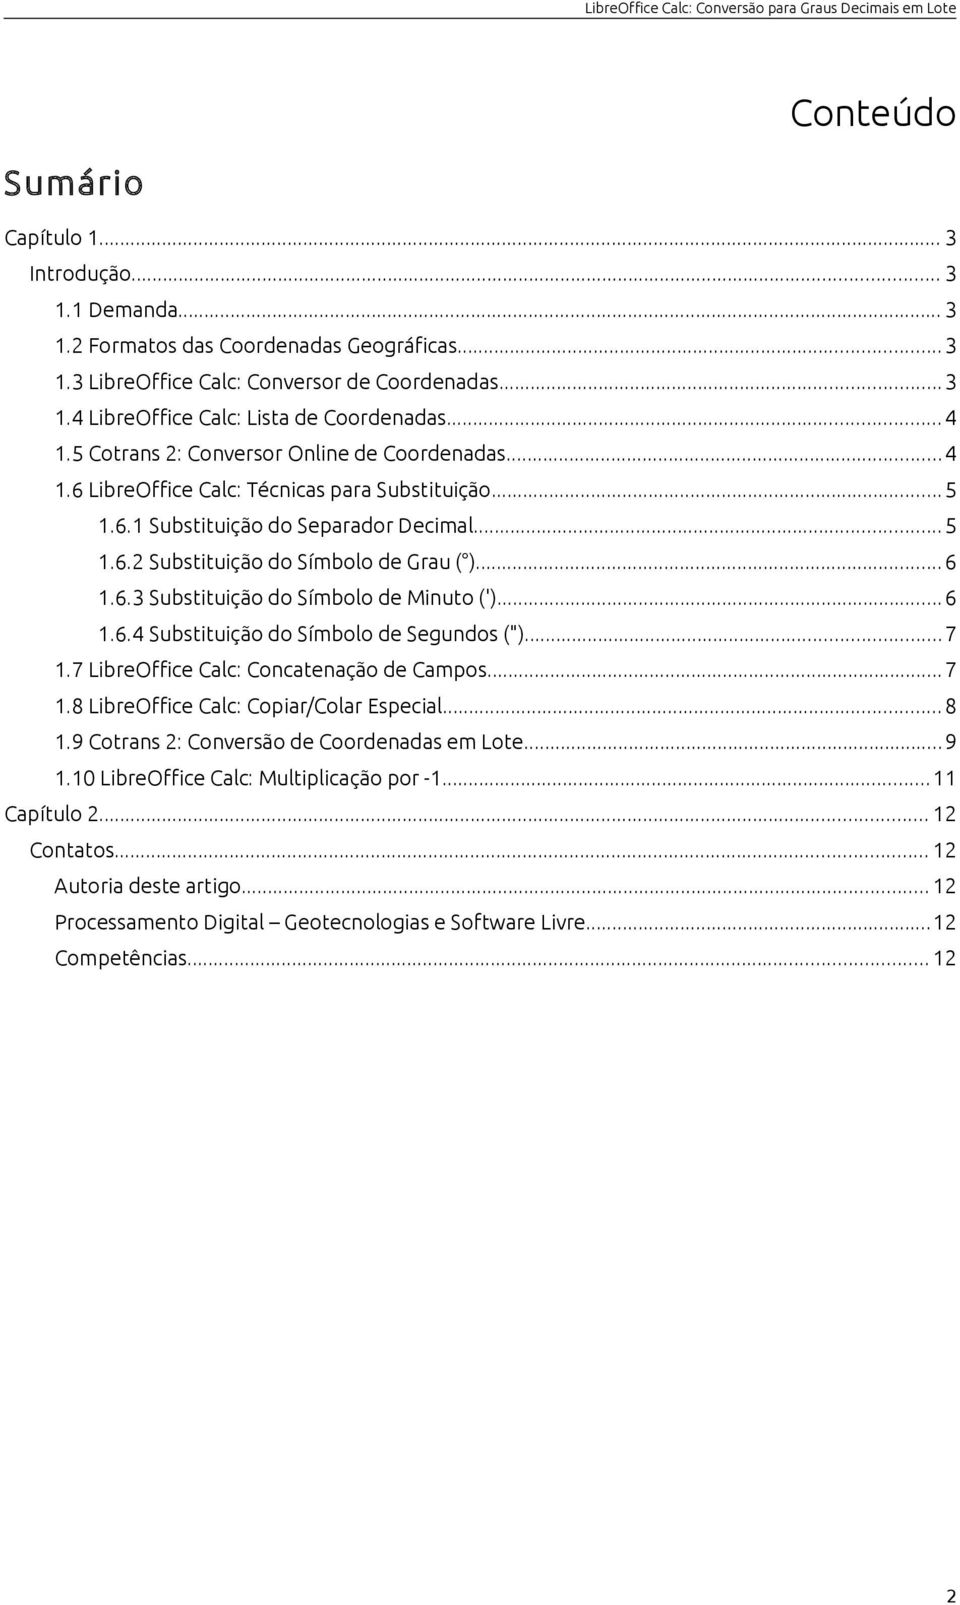 .. 6 1.6.3 Substituição do Símbolo de Minuto (')...6 1.6.4 Substituição do Símbolo de Segundos (")...7 1.7 LibreOffice Calc: Concatenação de Campos... 7 1.8 LibreOffice Calc: Copiar/Colar Especial.